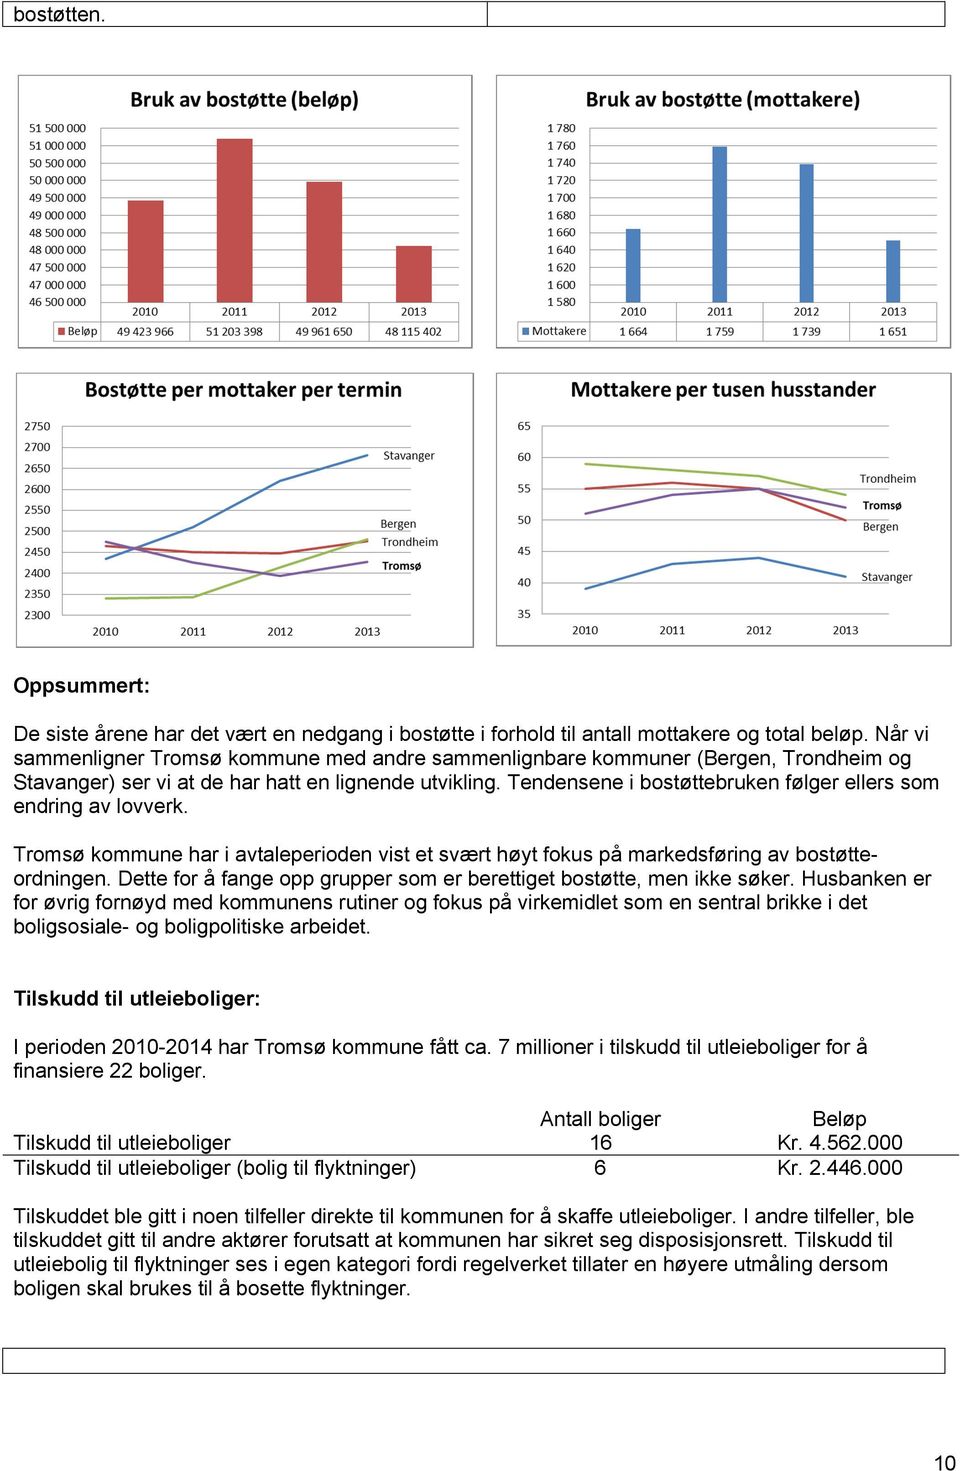 Tendensene i bostøttebruken følger ellers som endring av lovverk. Tromsø kommune har i avtaleperioden vist et svært høyt fokus på markedsføring av bostøtteordningen.